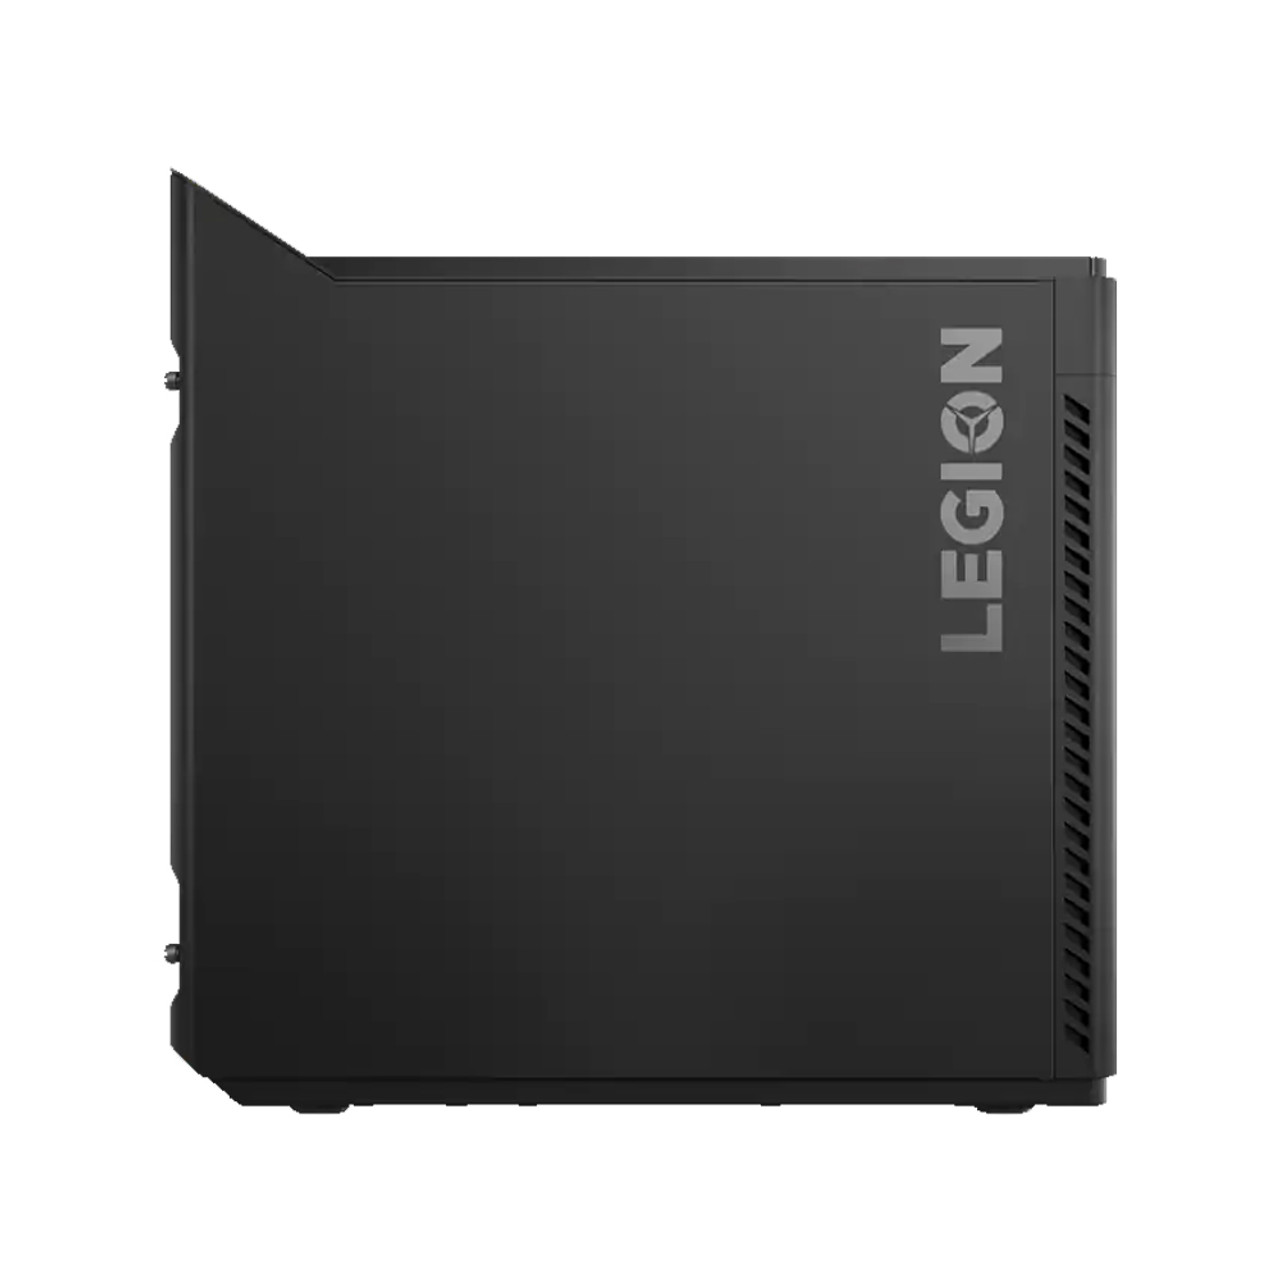 Lenovo Legion Tower 5i i5-10400 GeForce GTX 1660 16GB Ram 256GB SSD 1TB HDD W10H | 90NC00JBUS | Manufacturer Refurbished